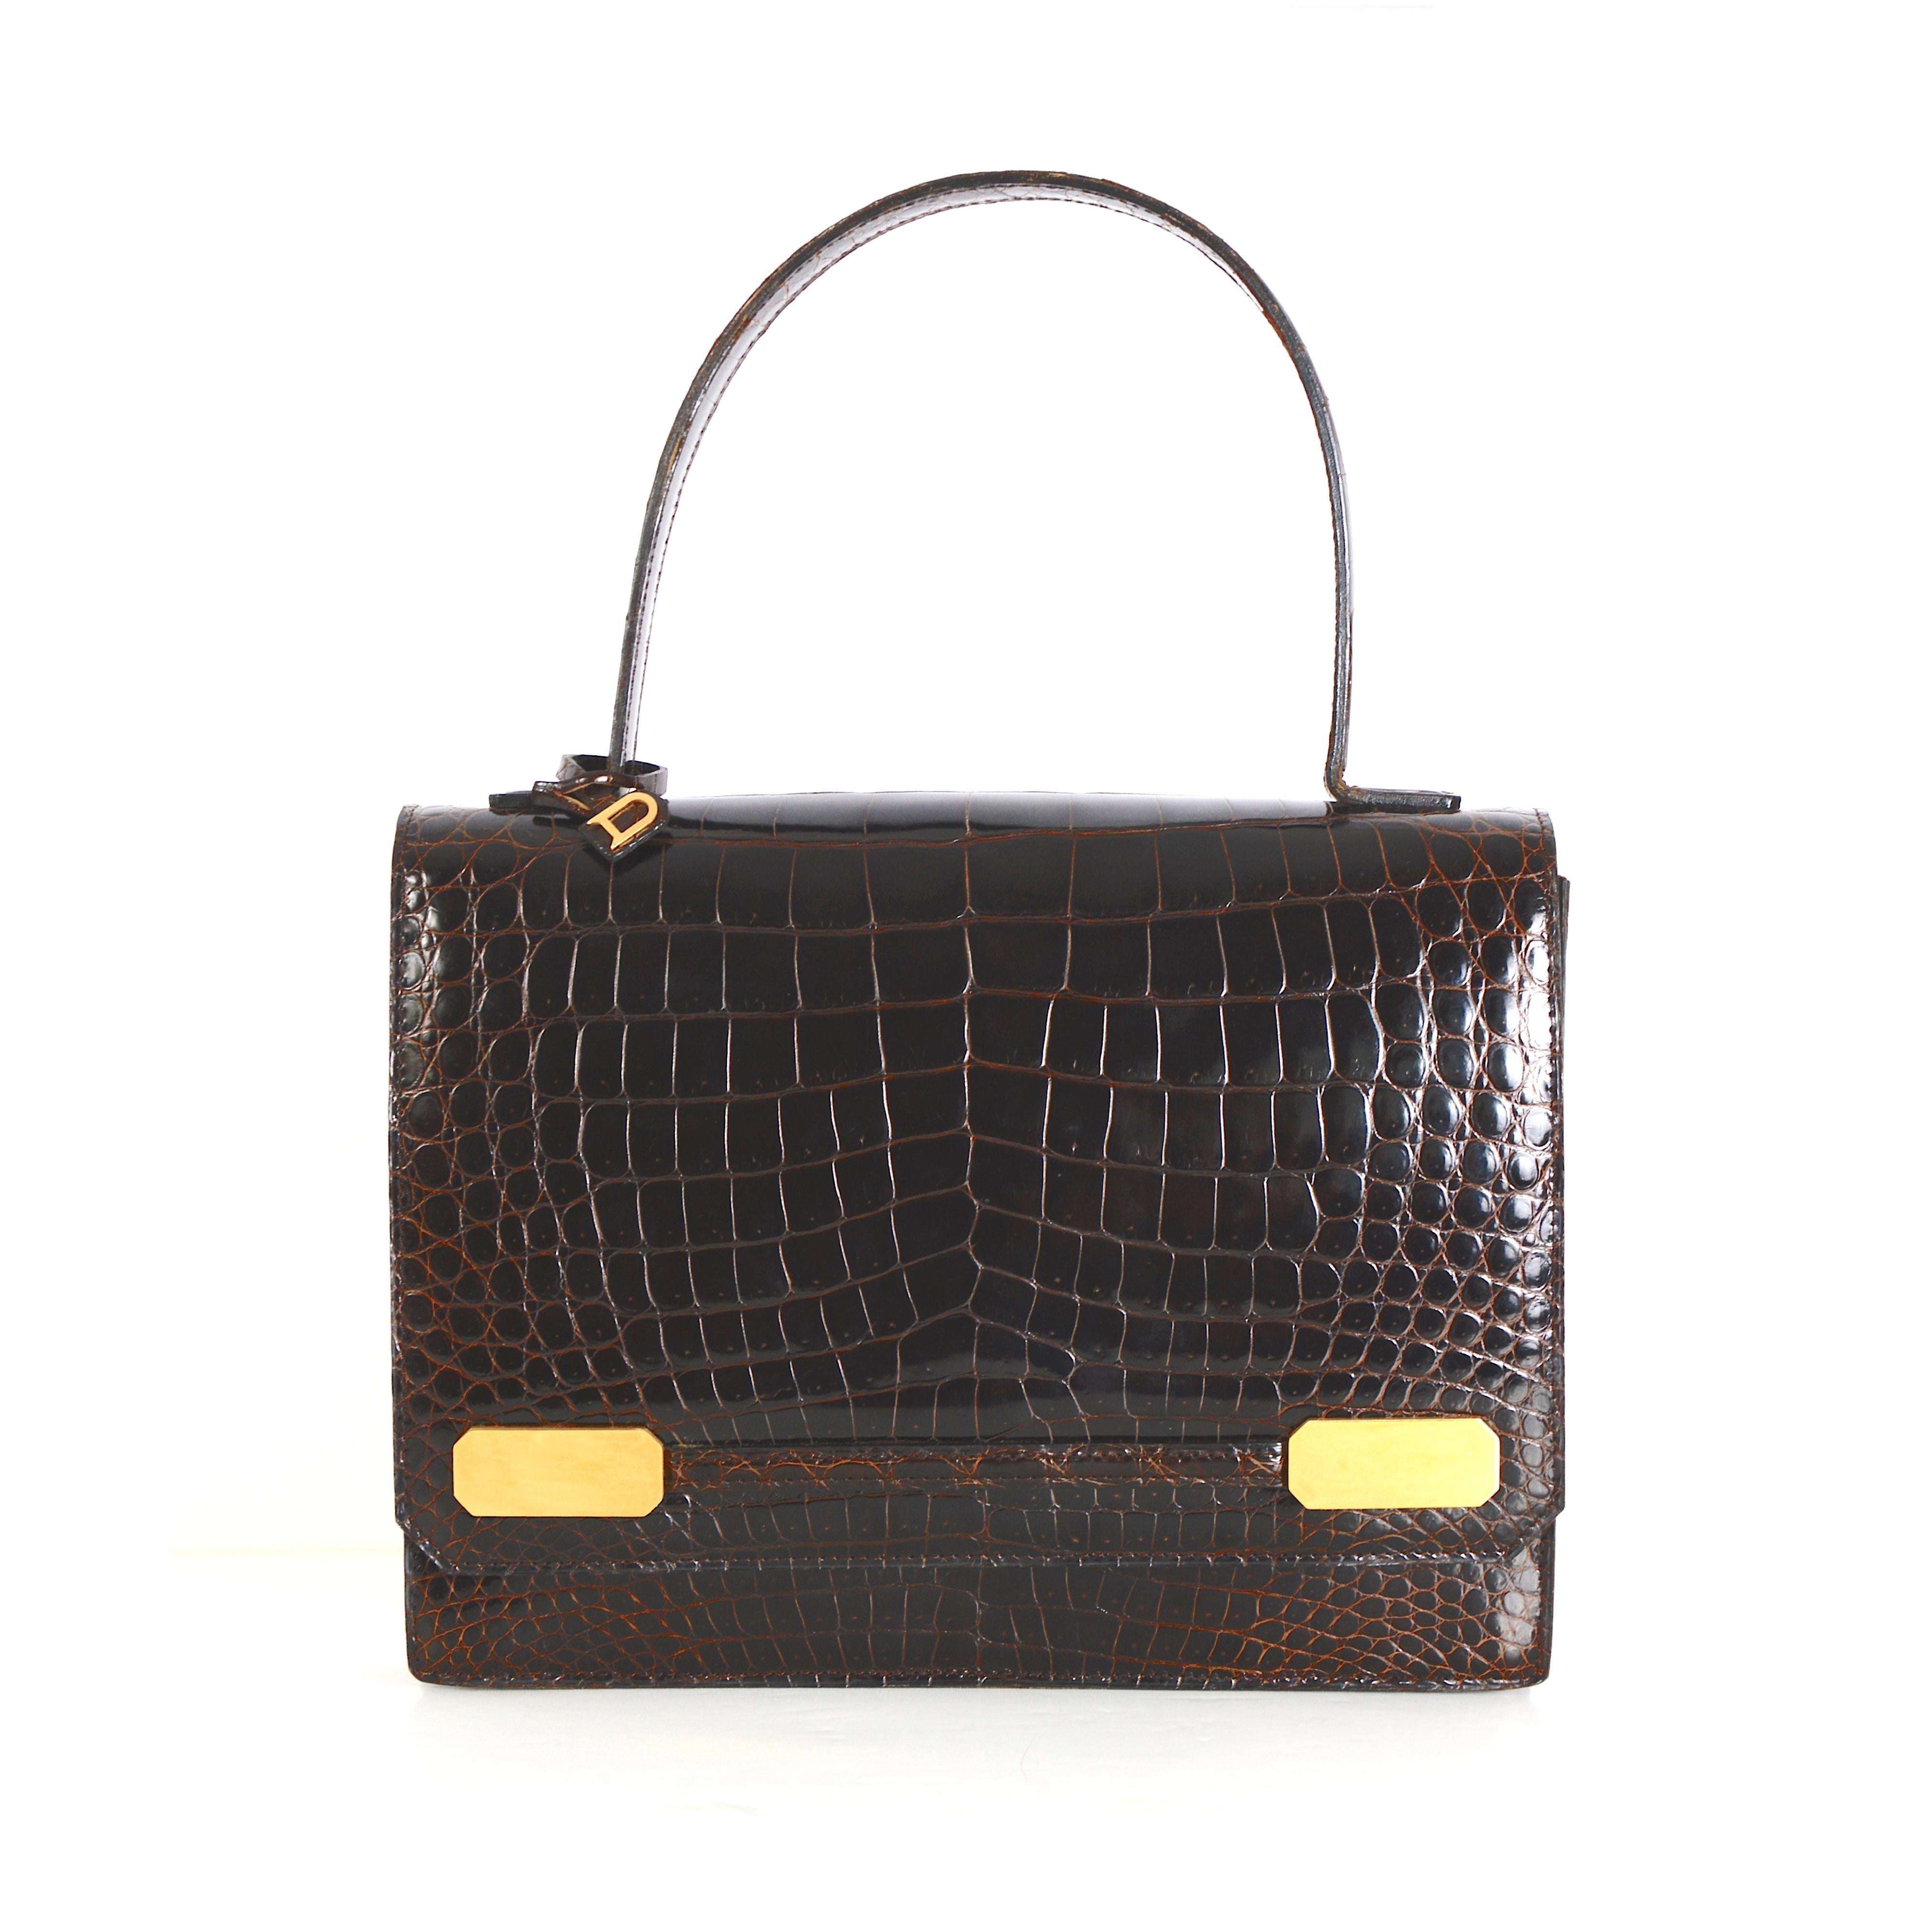 Wir stellen Ihnen diese außergewöhnliche Delvaux-Tasche mit braunem Kroko-Obergriff aus den 1980er Jahren vor.

Lassen Sie sich von der zeitlosen Eleganz dieses außergewöhnlichen Delvaux-Designs verzaubern, einem echten Vintage-Schmuckstück aus den